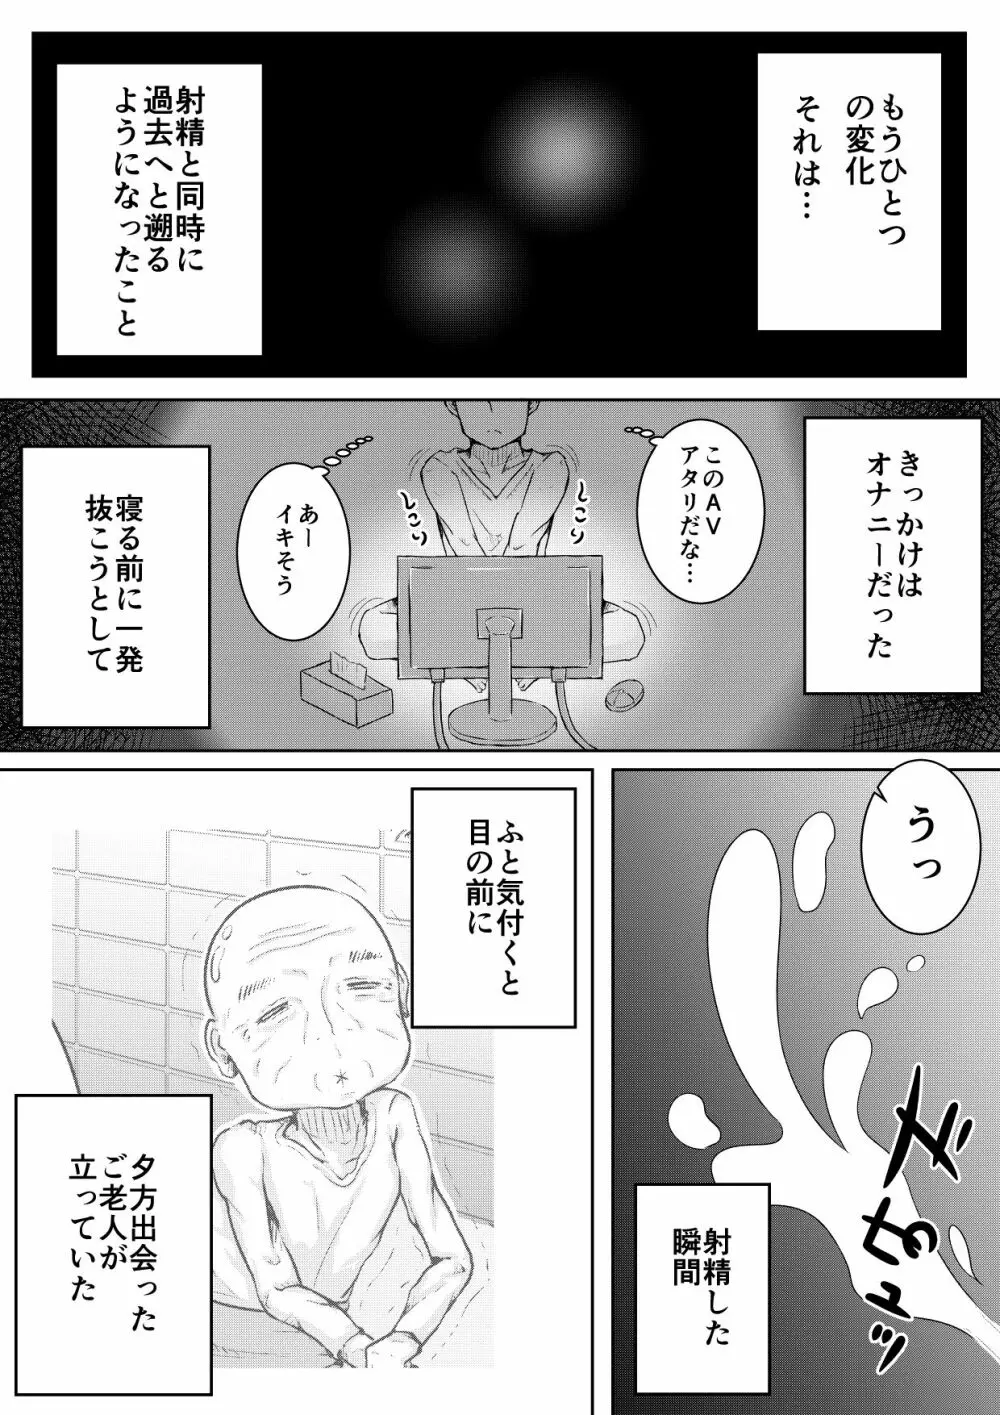 ふぉー・ふーむ・ごっど・わーくす - page10